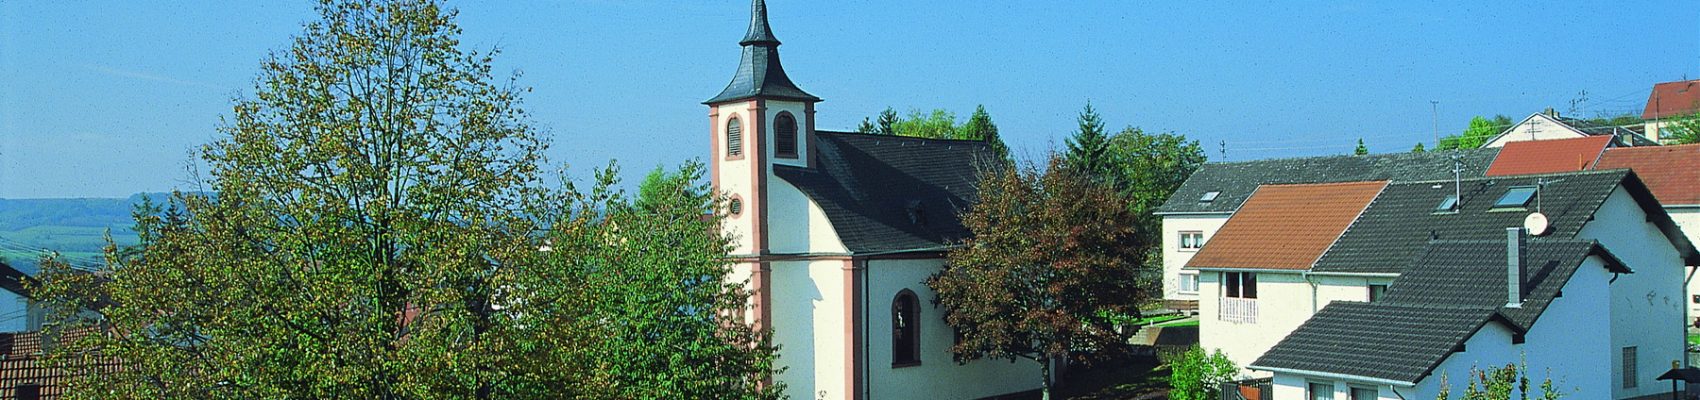 Sehenswürdigkeiten in Merzig: Kapelle Harlingen